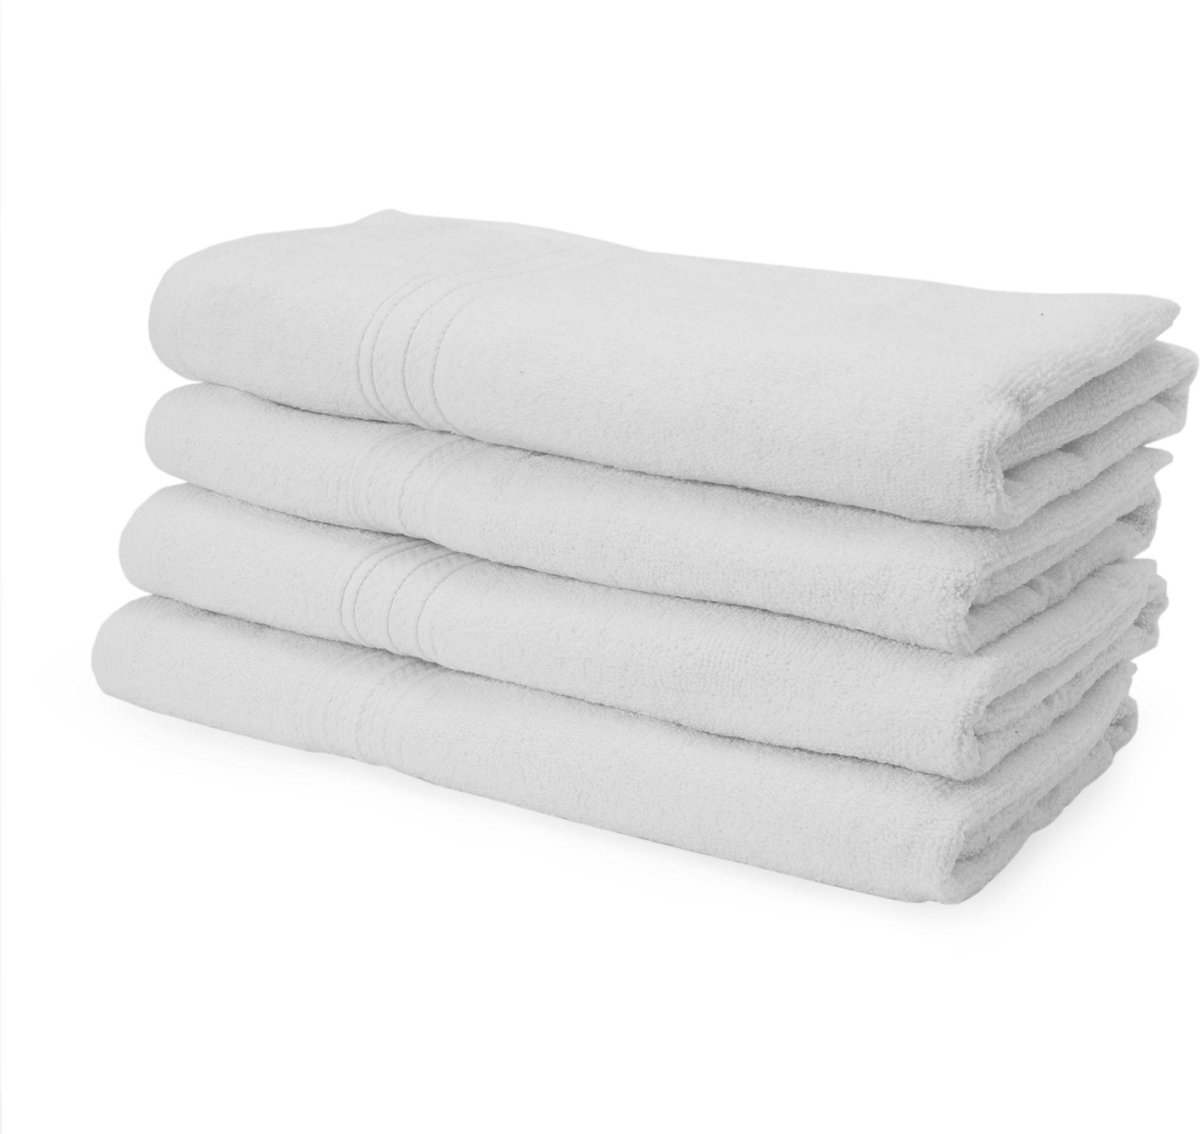 Lumaland - Handdoeken - 4 delige handdoekenset - 100% katoen - 50x100cm - Wit